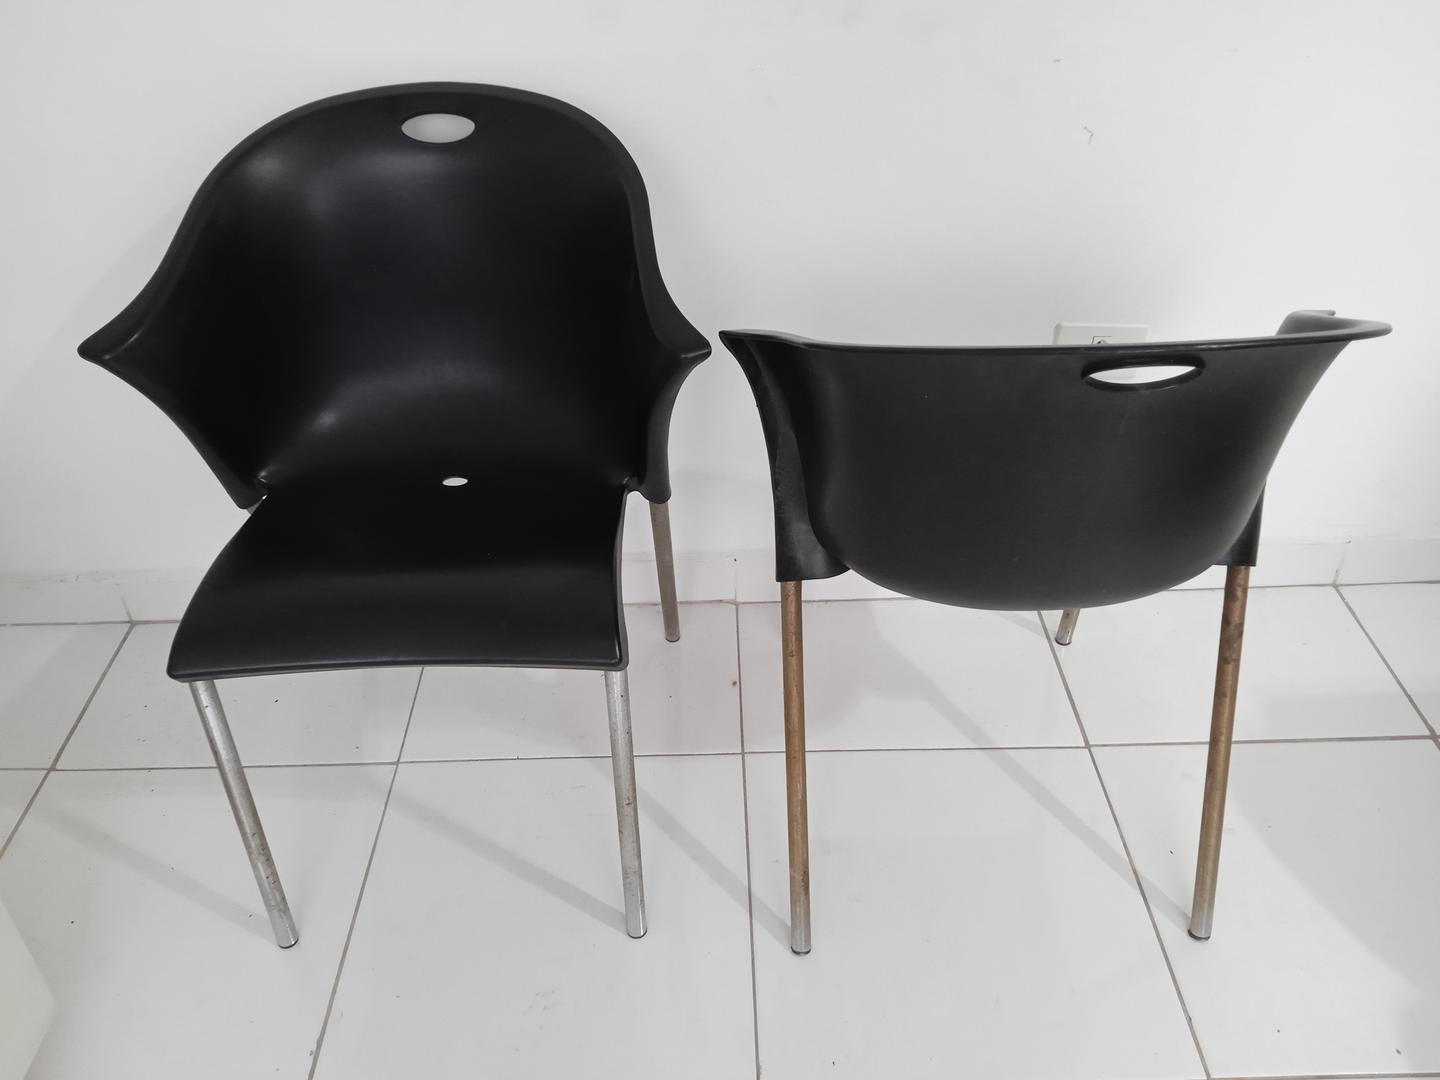 Cadeira fixa em Plástico Preto 77 cm x 60 cm x 54 cm